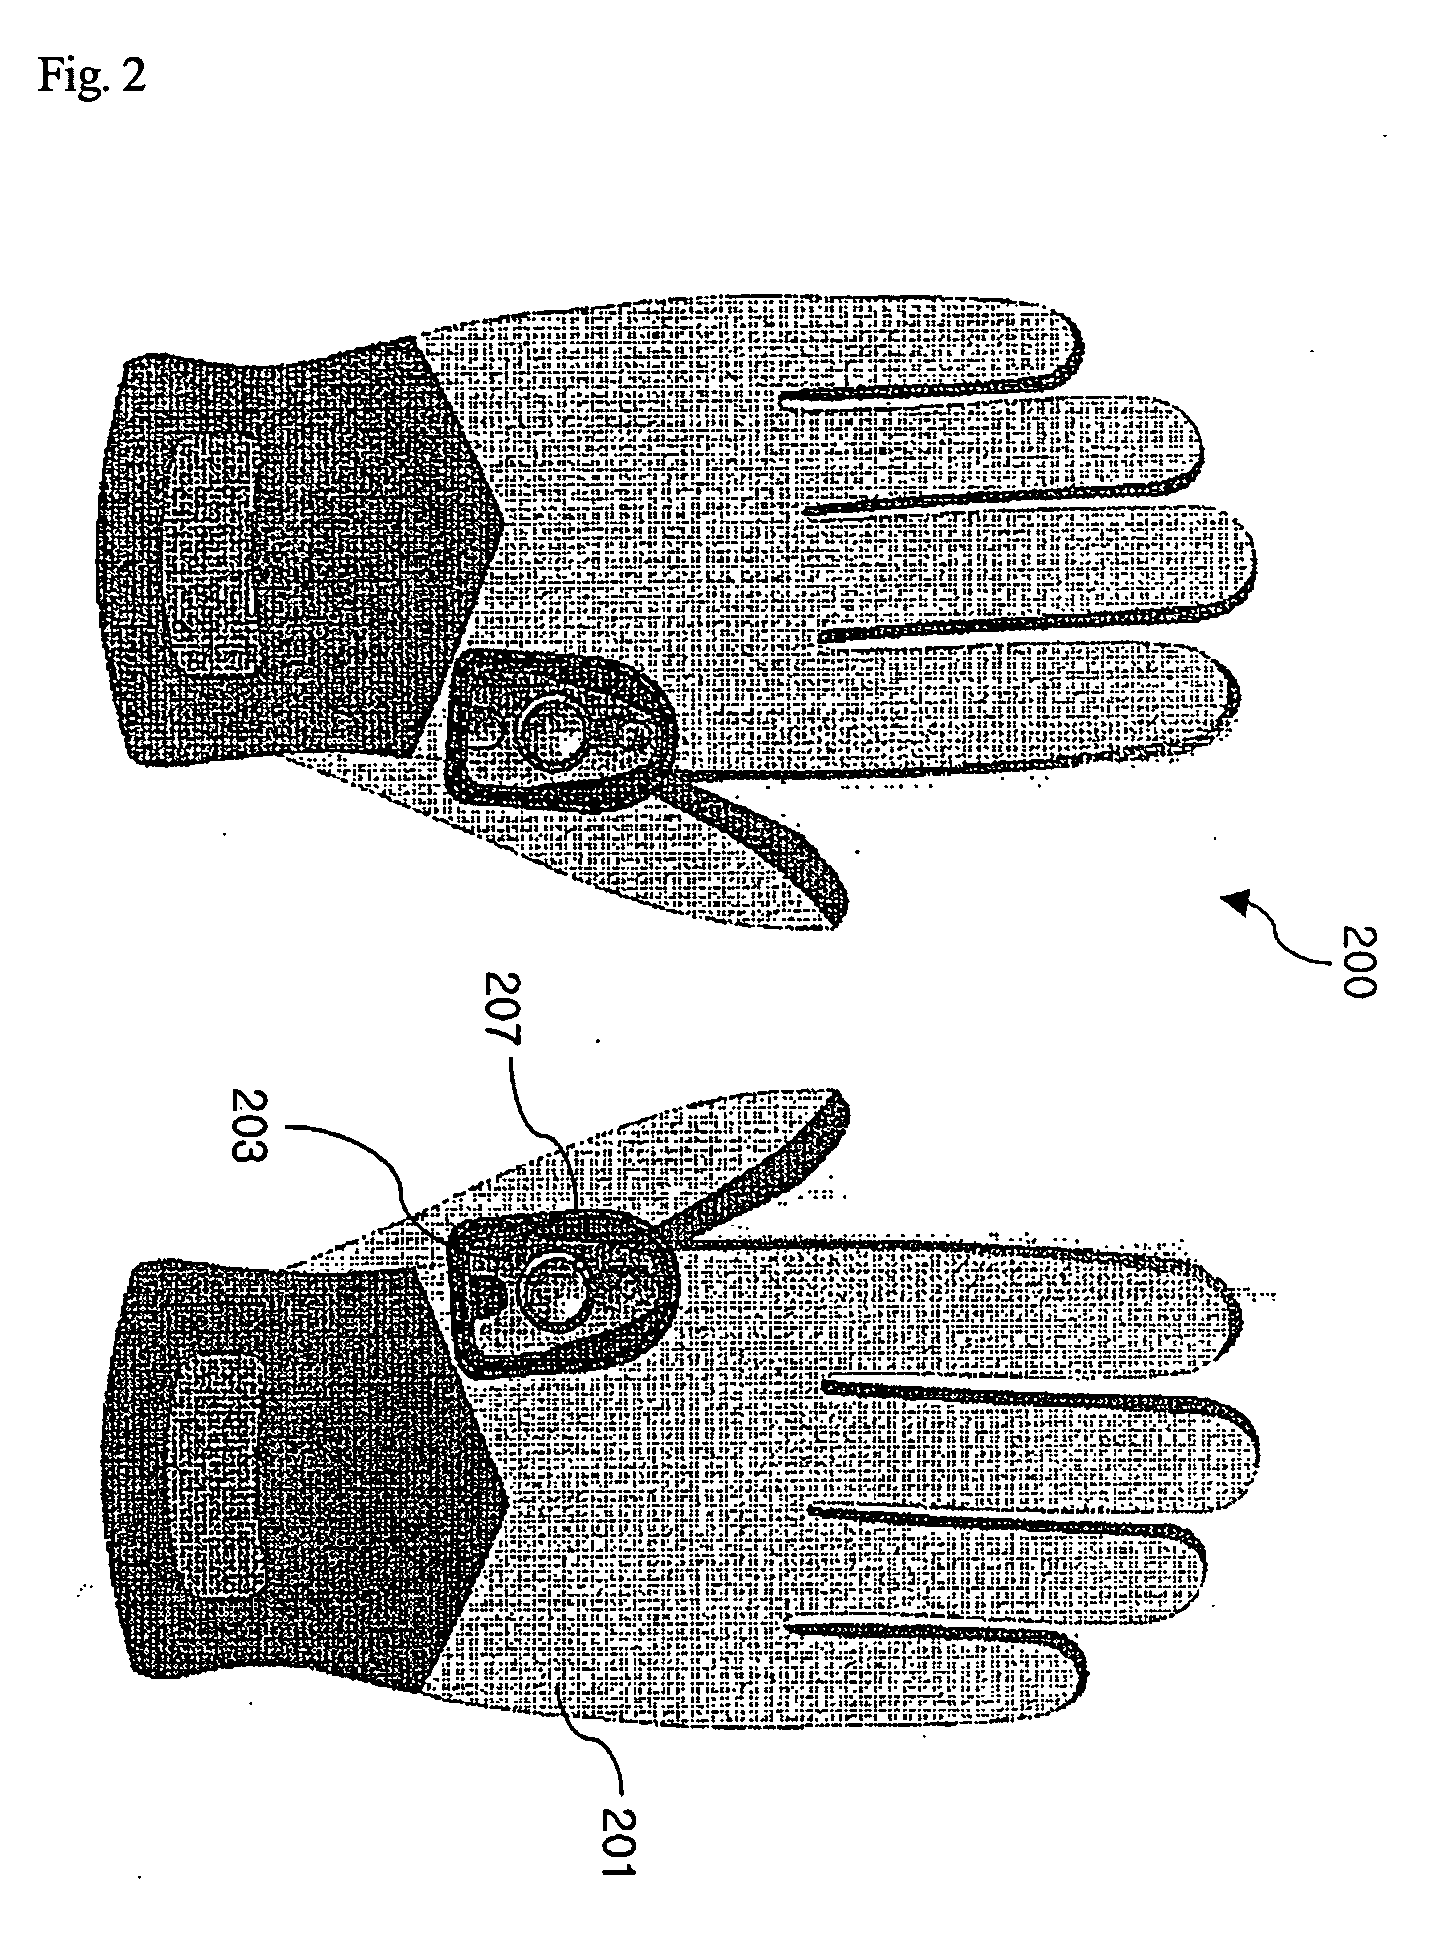 Light emitting device for gloves